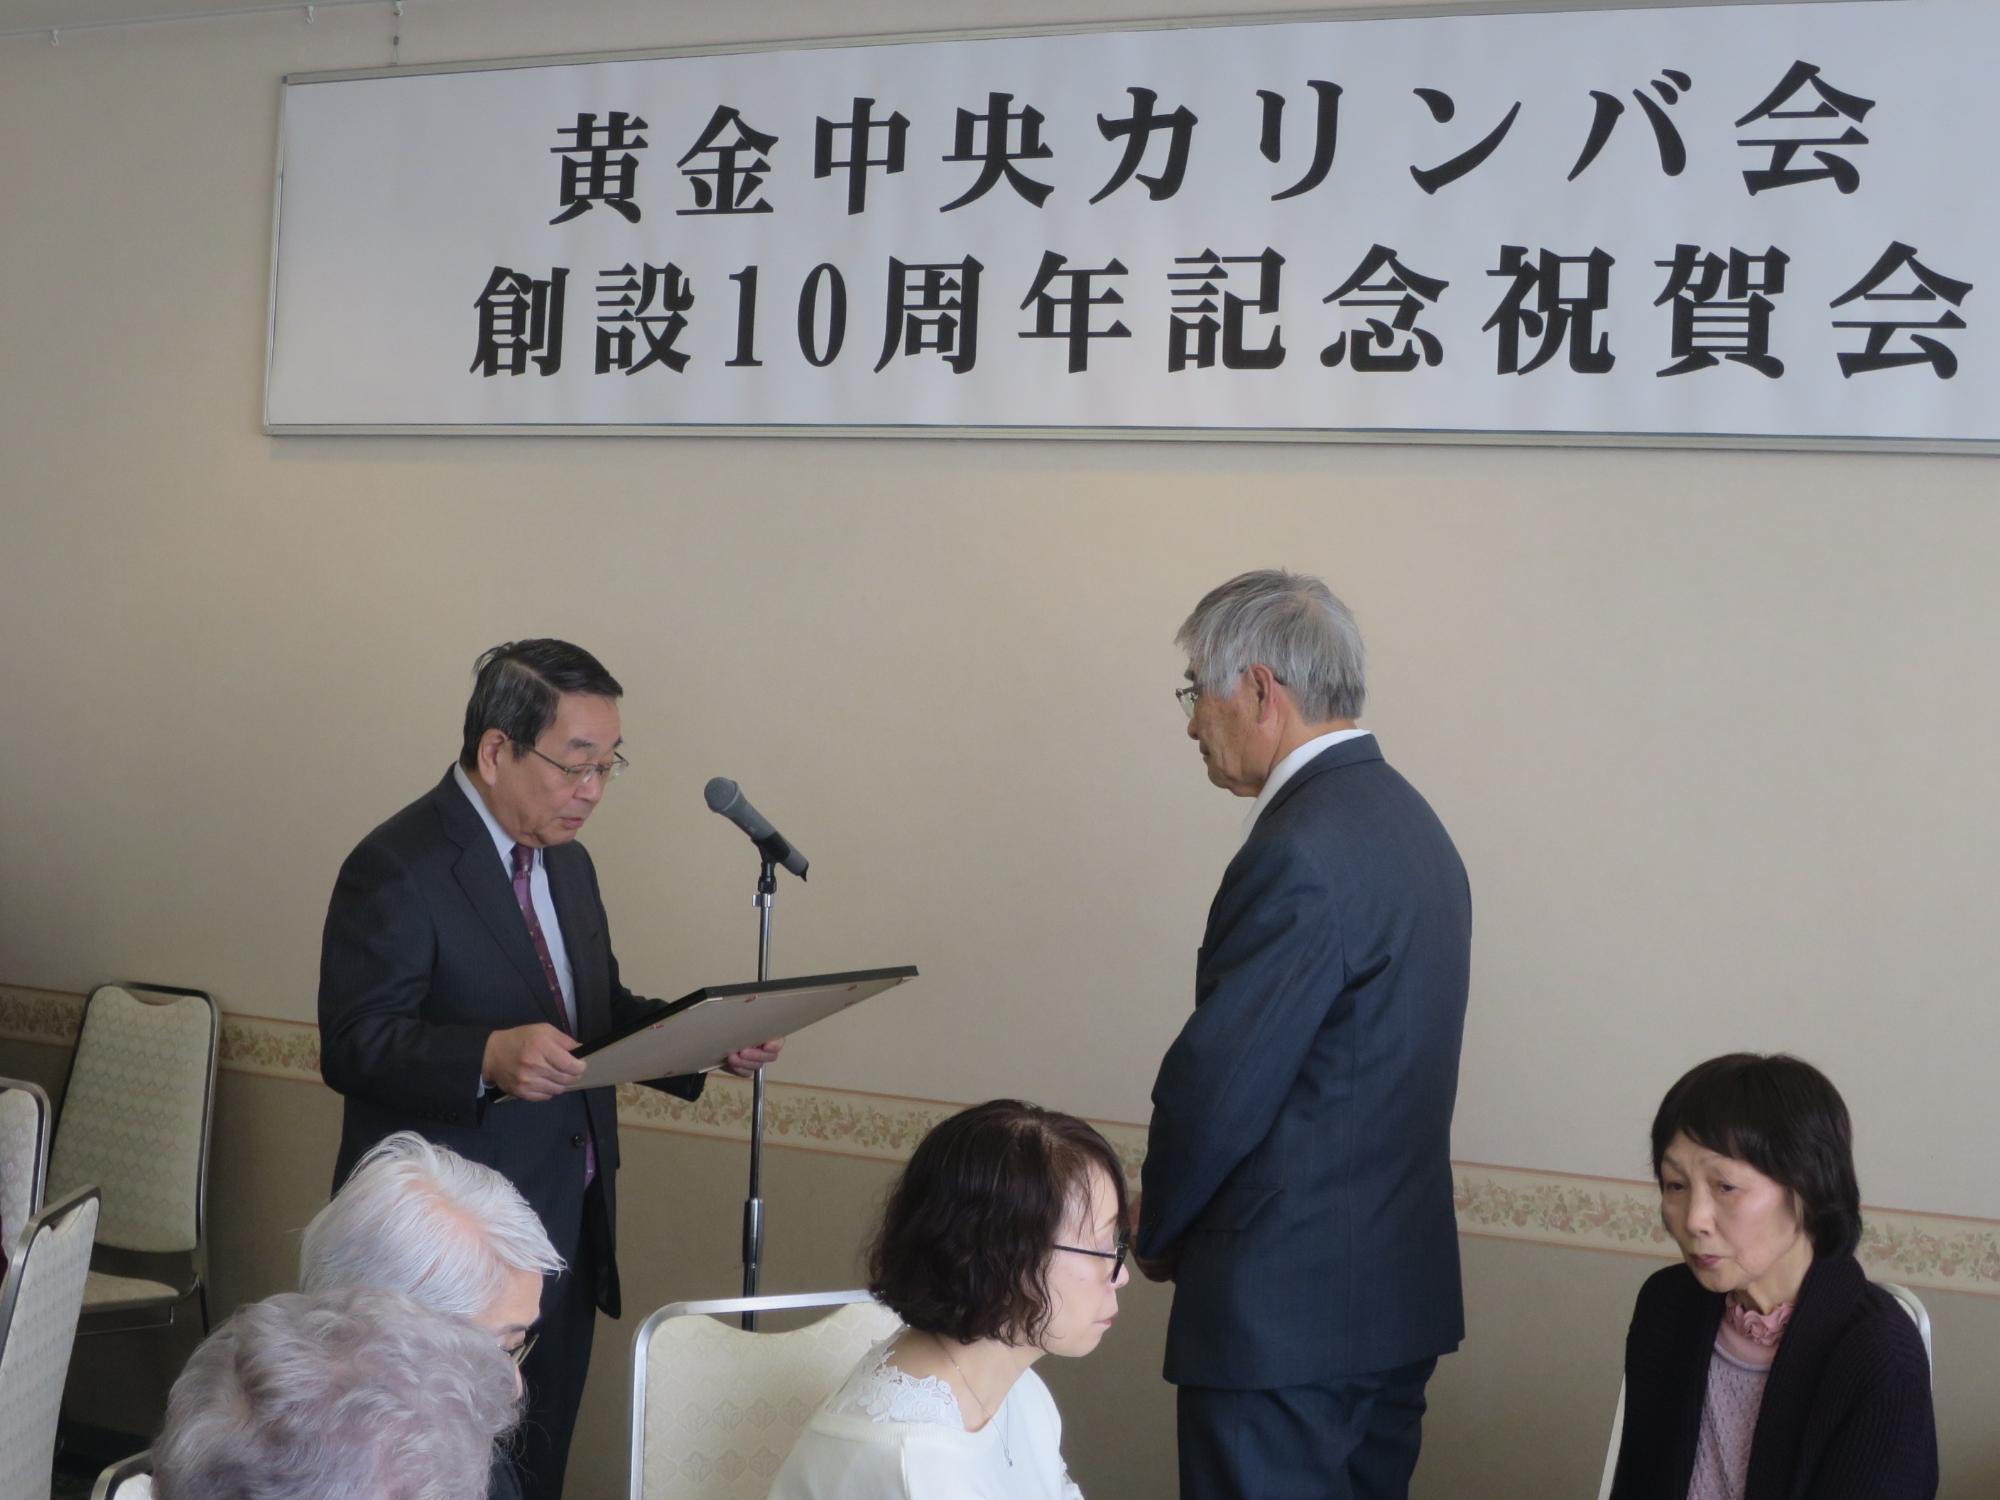 黄金中央カリンバ会創立10周年記念祝賀会で表彰状を渡す原田市長